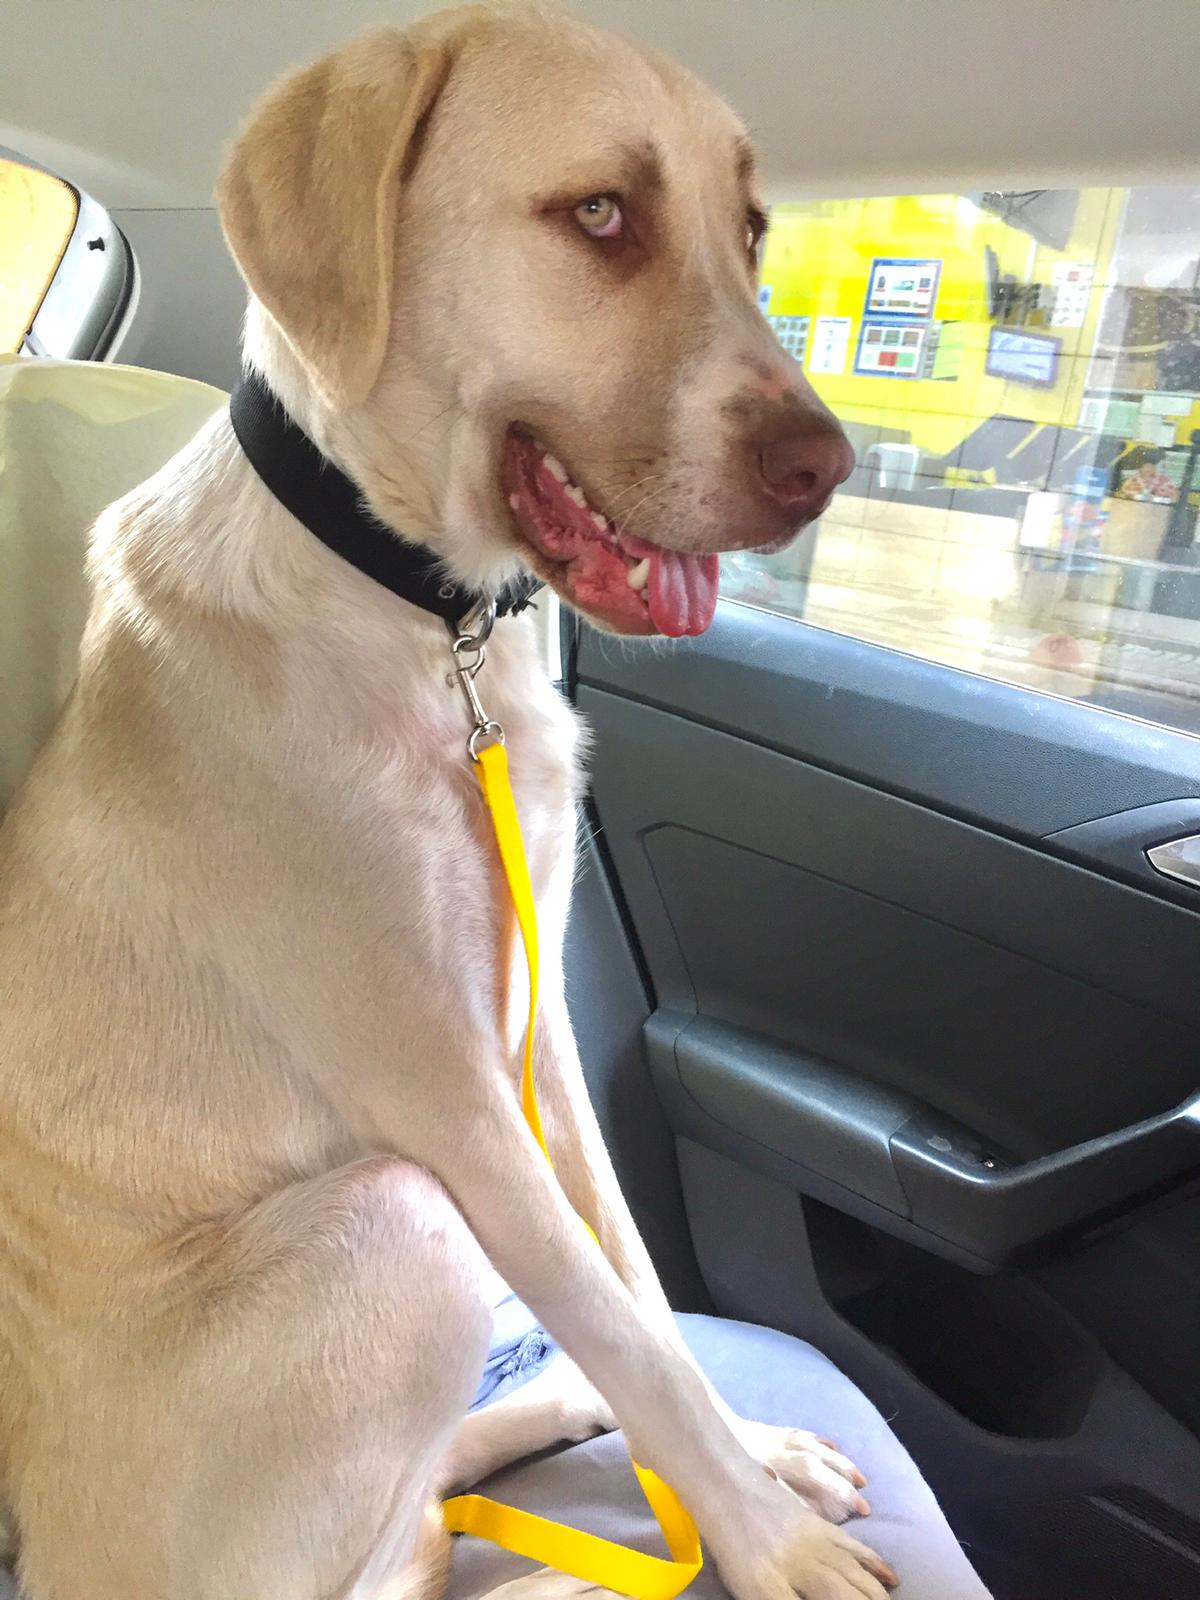 Kadıköy’de barınaktan sahiplendiği görme engelli köpeğine ev kiraladı